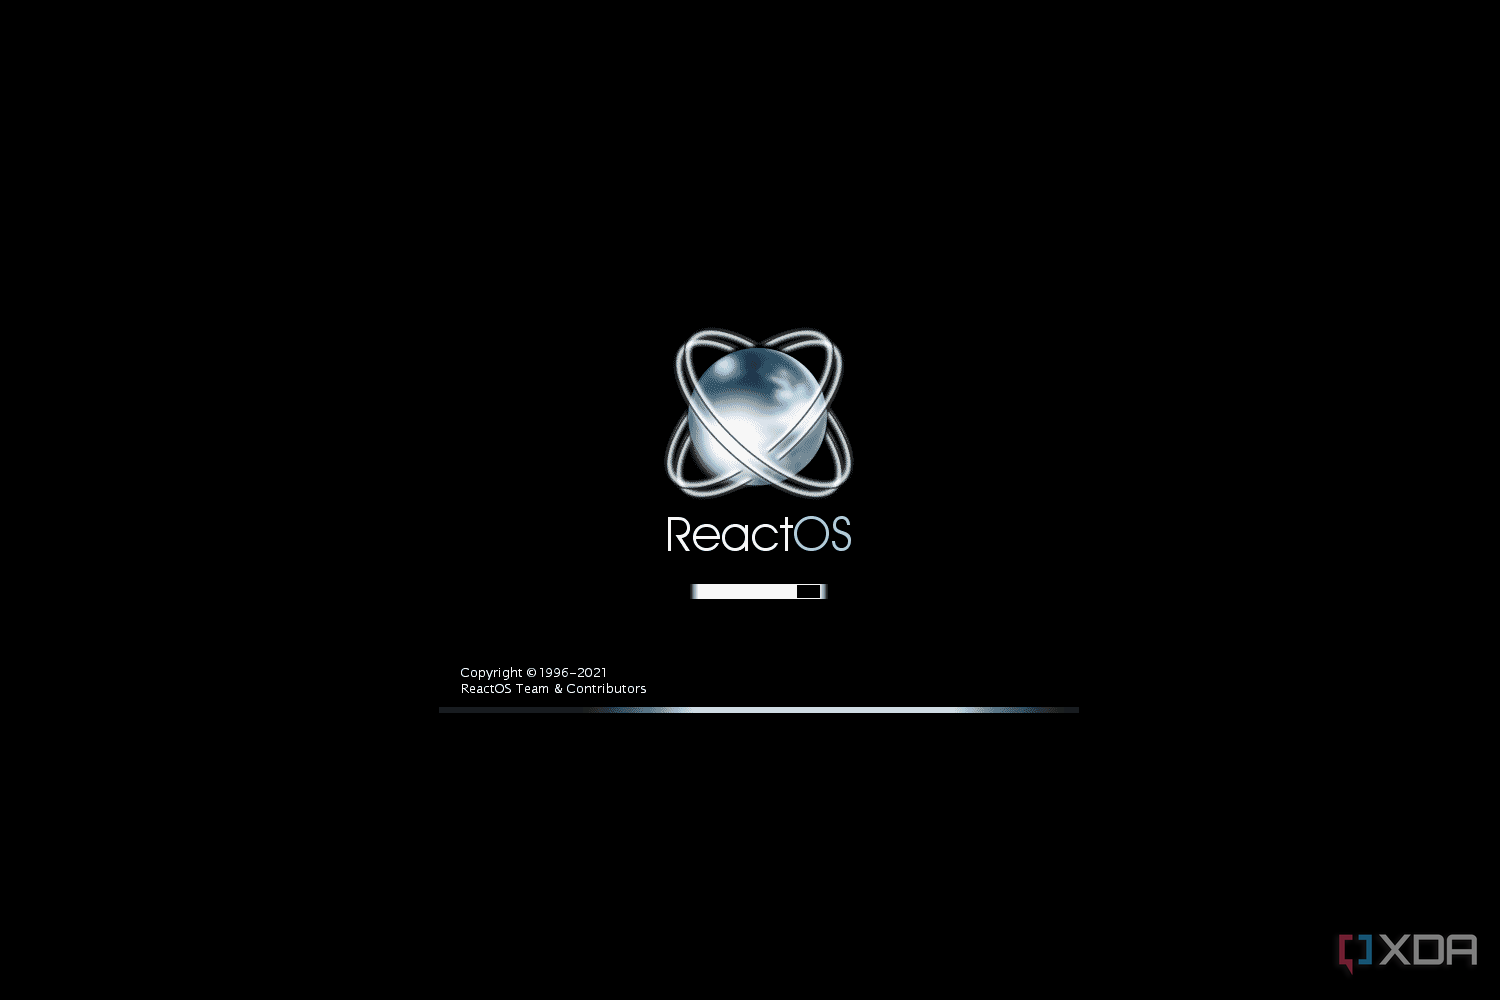 ReactOS boot animation